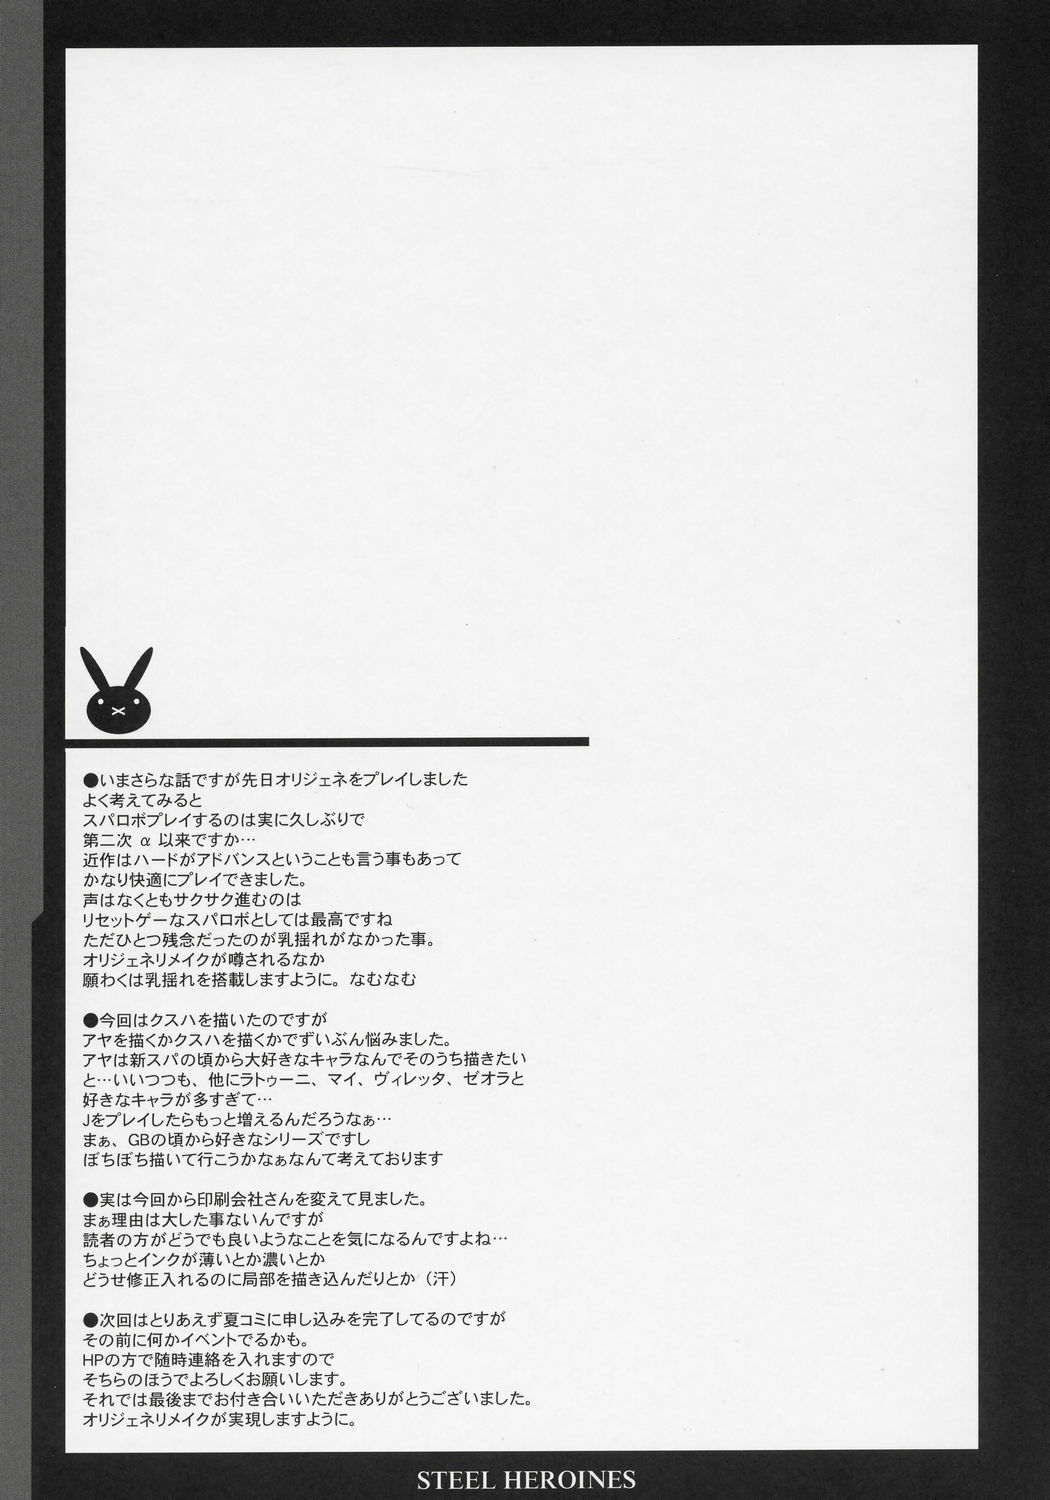 (SC31) [Youkai Tamanokoshi (CHIRO)] STEEL HEROINES Vol. 1 -Kusuha- (Super Robot Wars) page 24 full